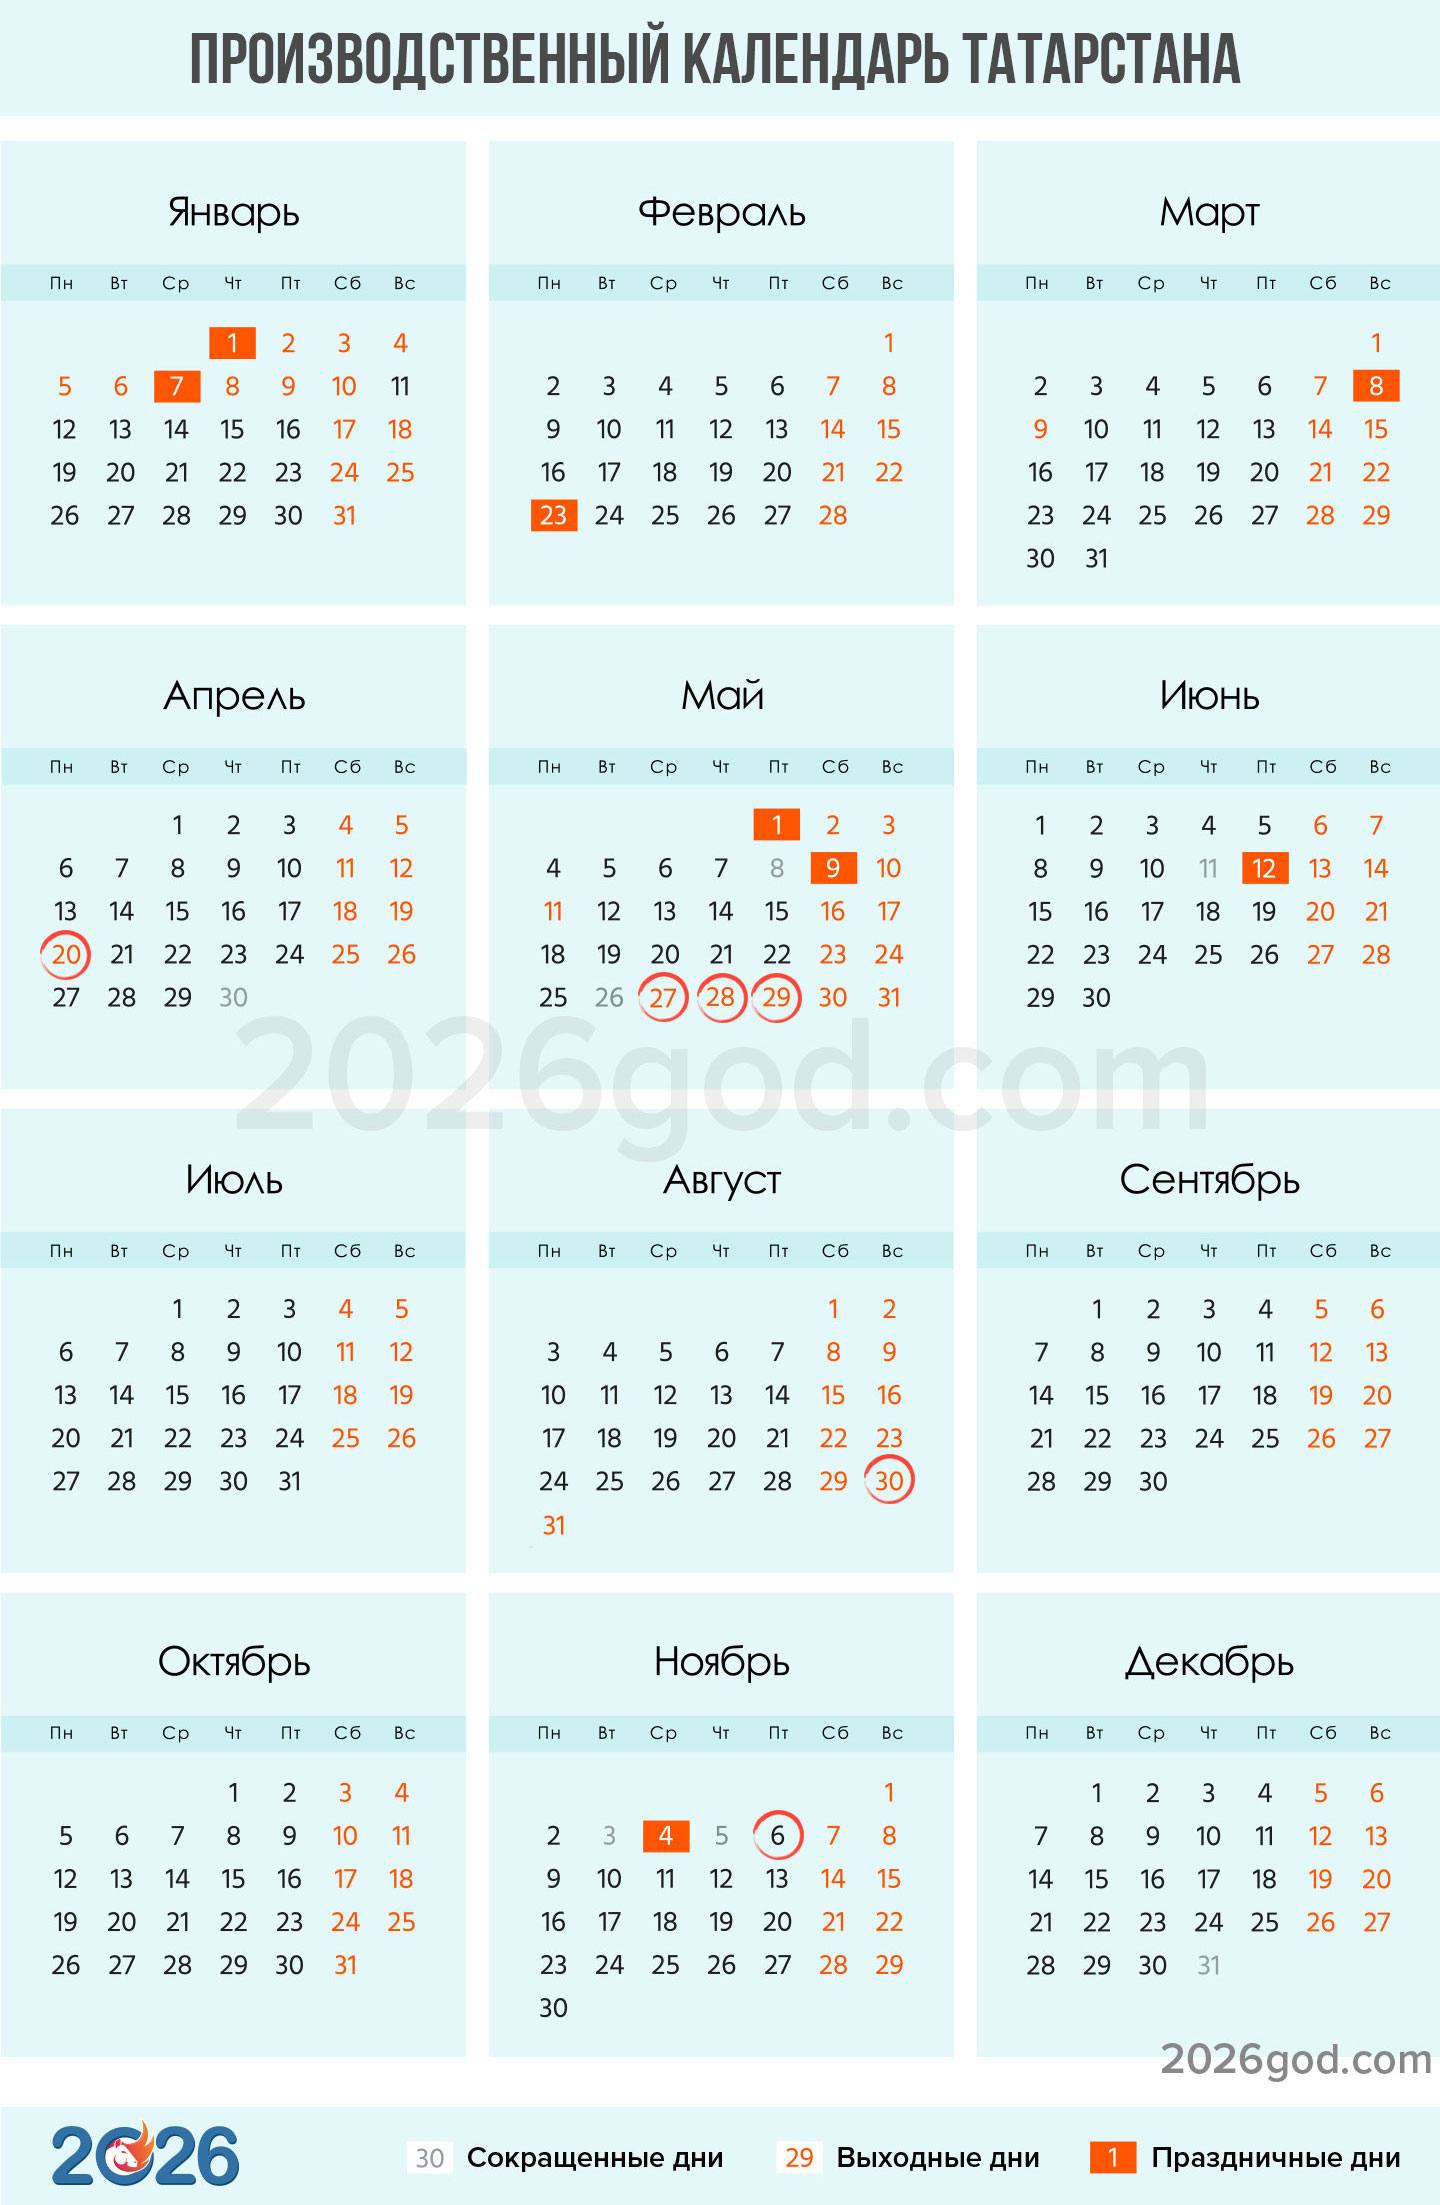 Производственный календарь Татарстана на 2026 год для пятидневки